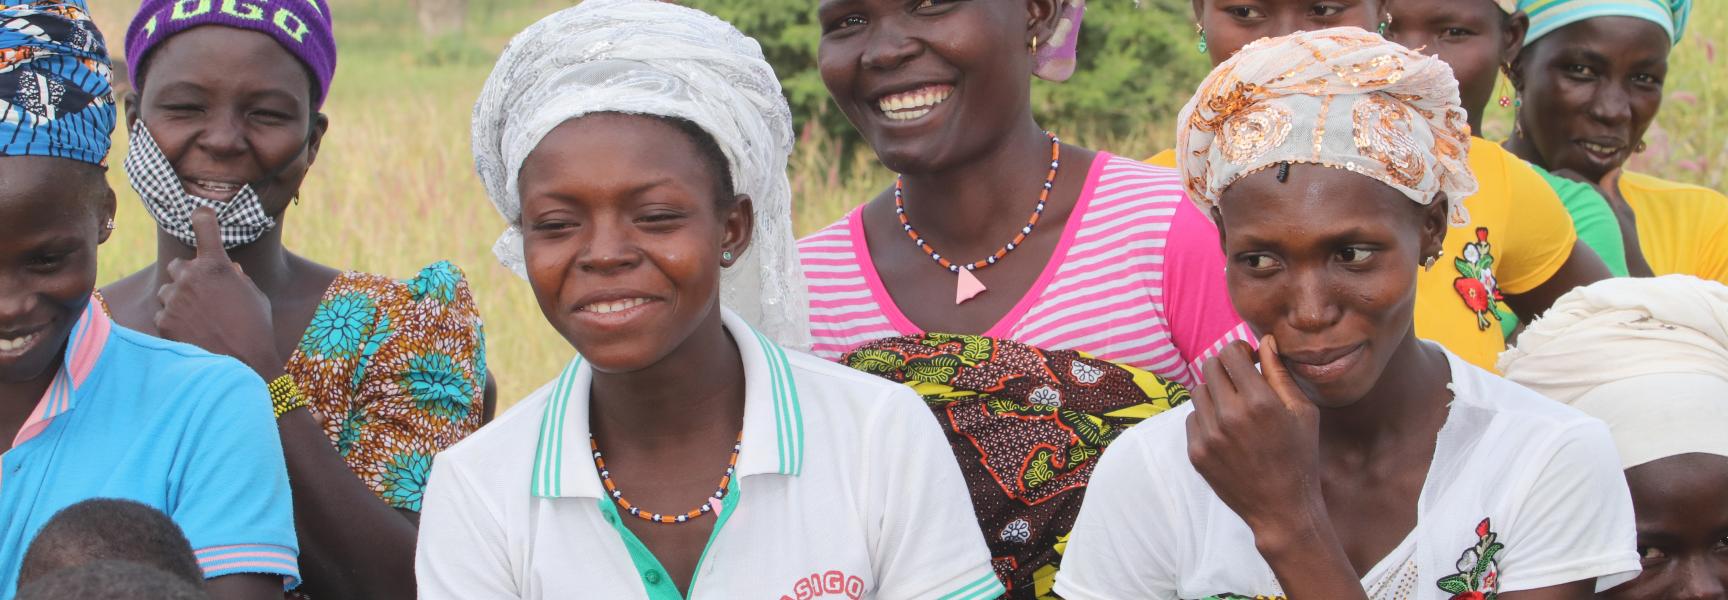 Des femmes du Togo qui rient ensemble